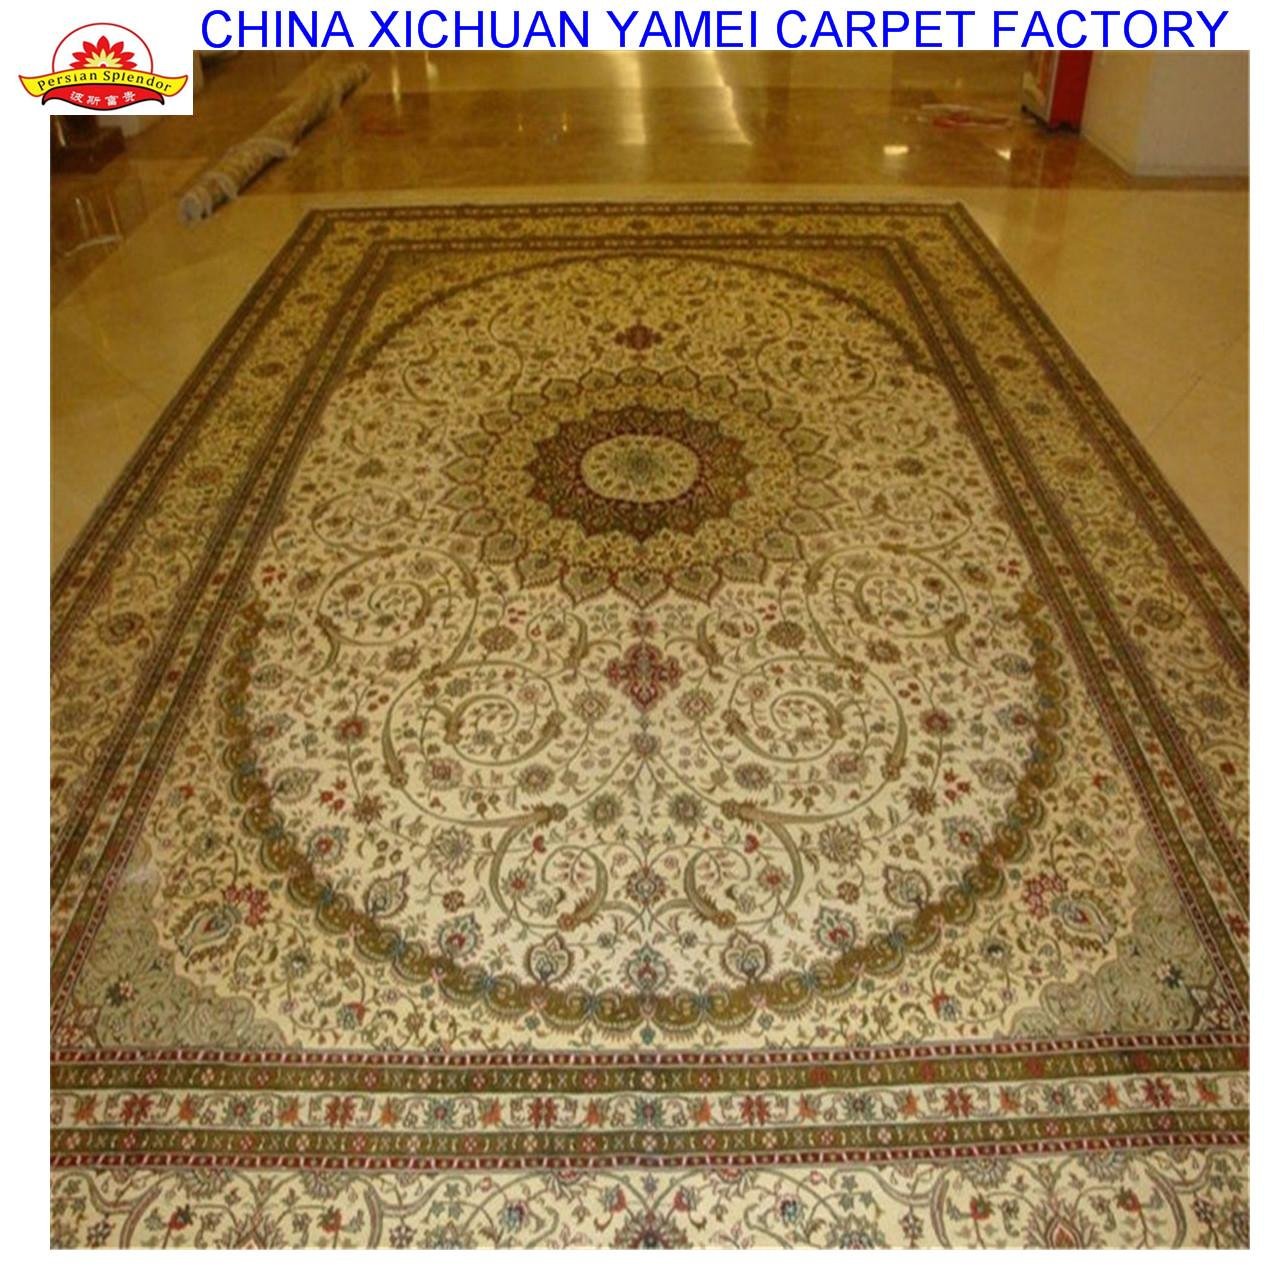 亞美生產手工優質絲毯 13826288657carpets  2